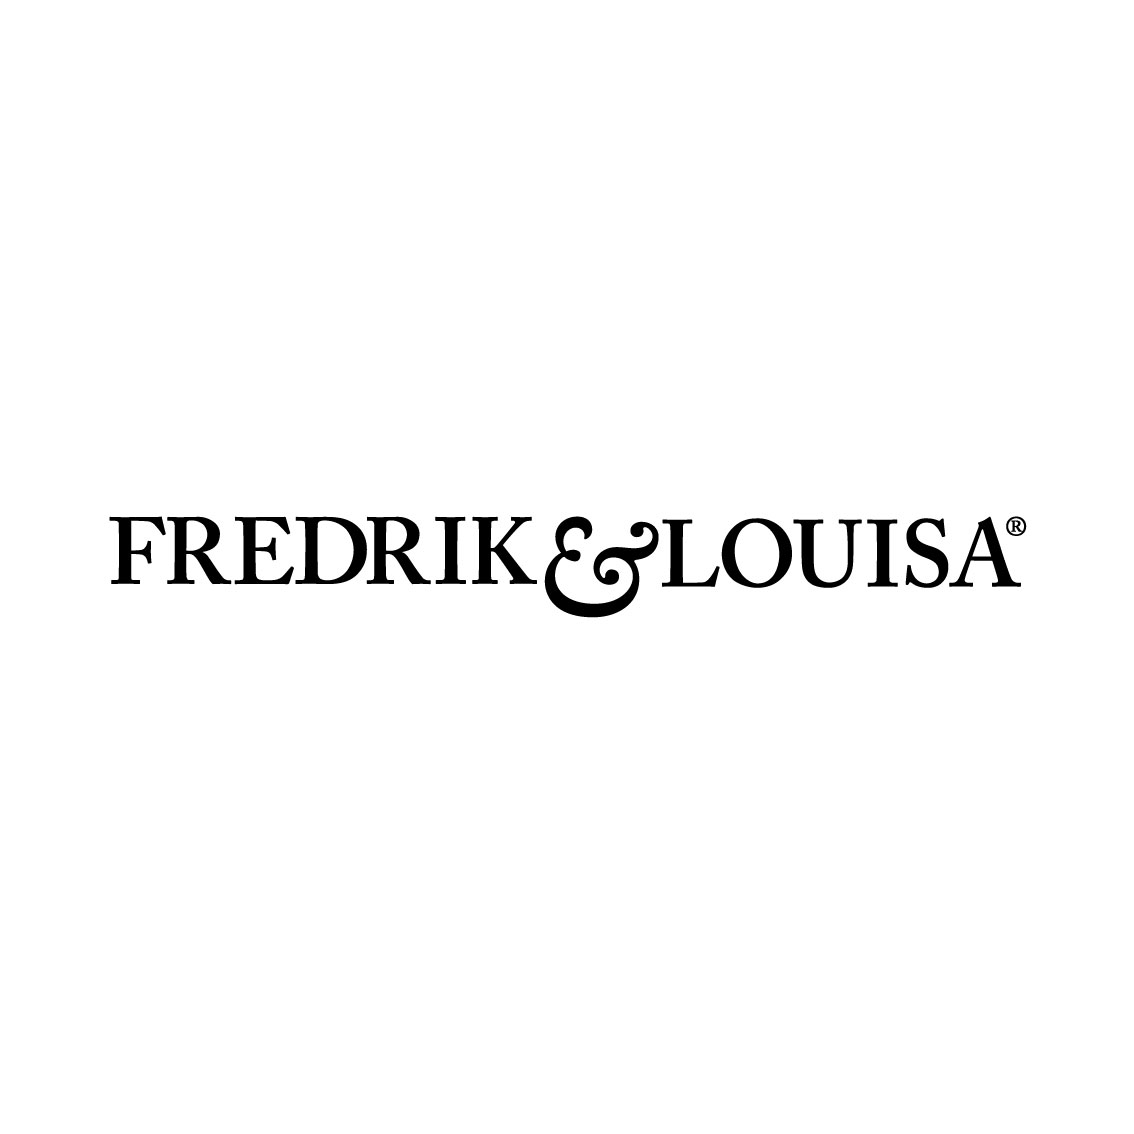 Fredrik & Louisa